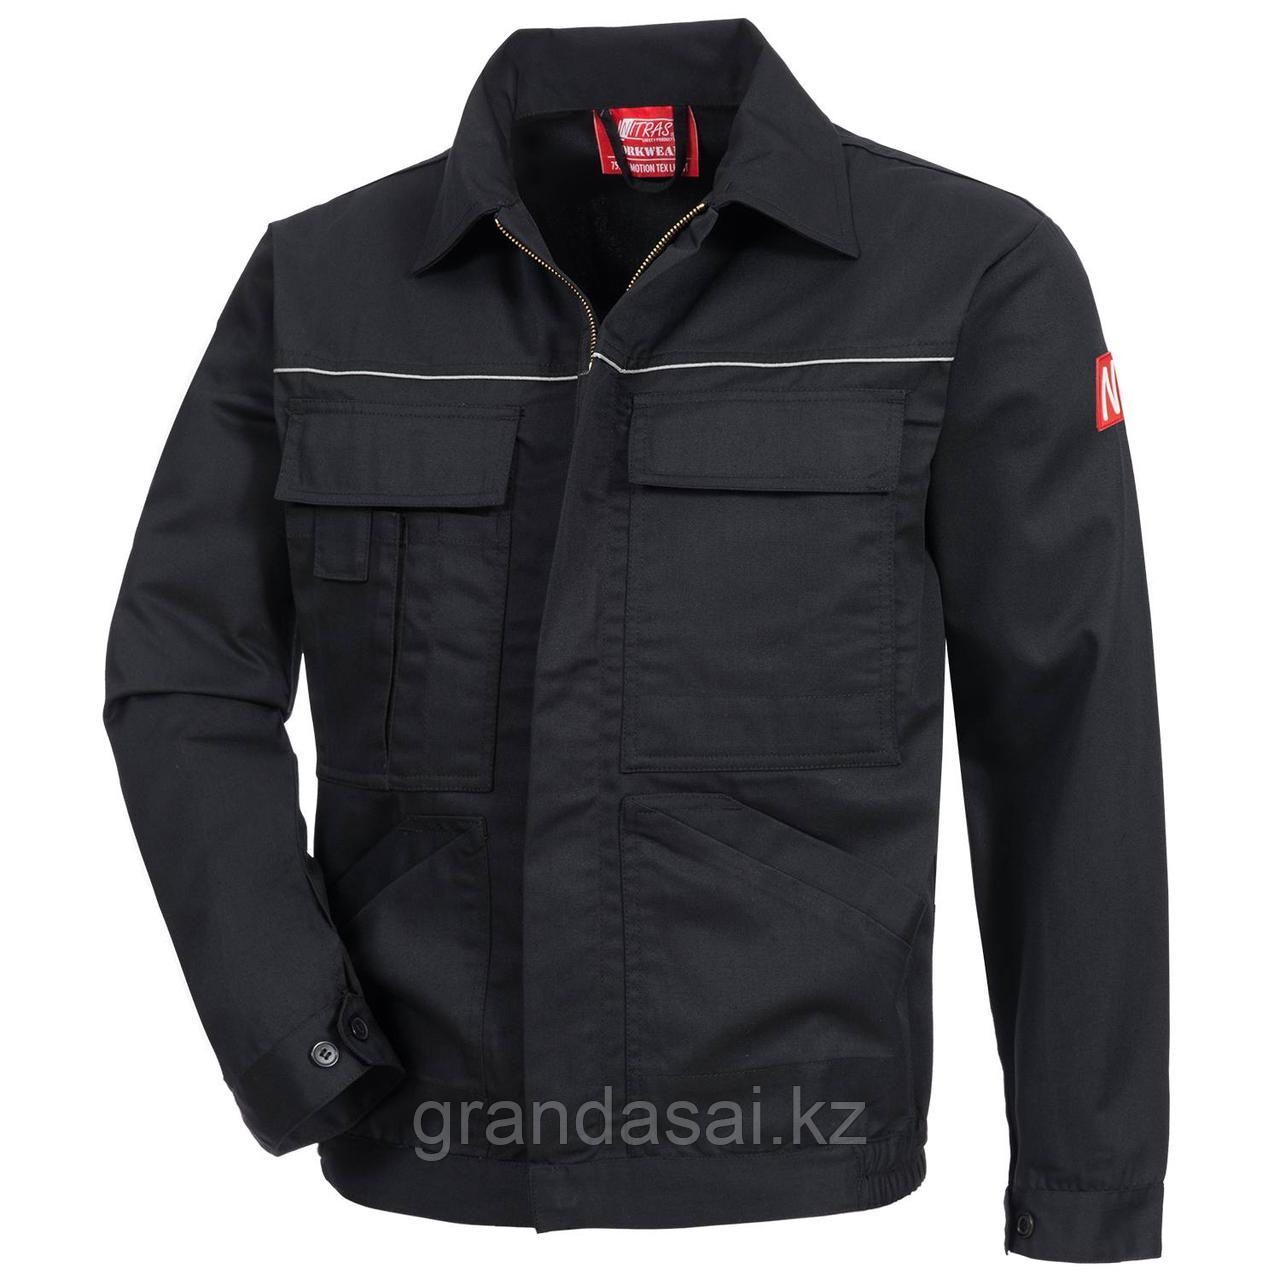 NITRAS 7550, рабочая куртка, цвет черный